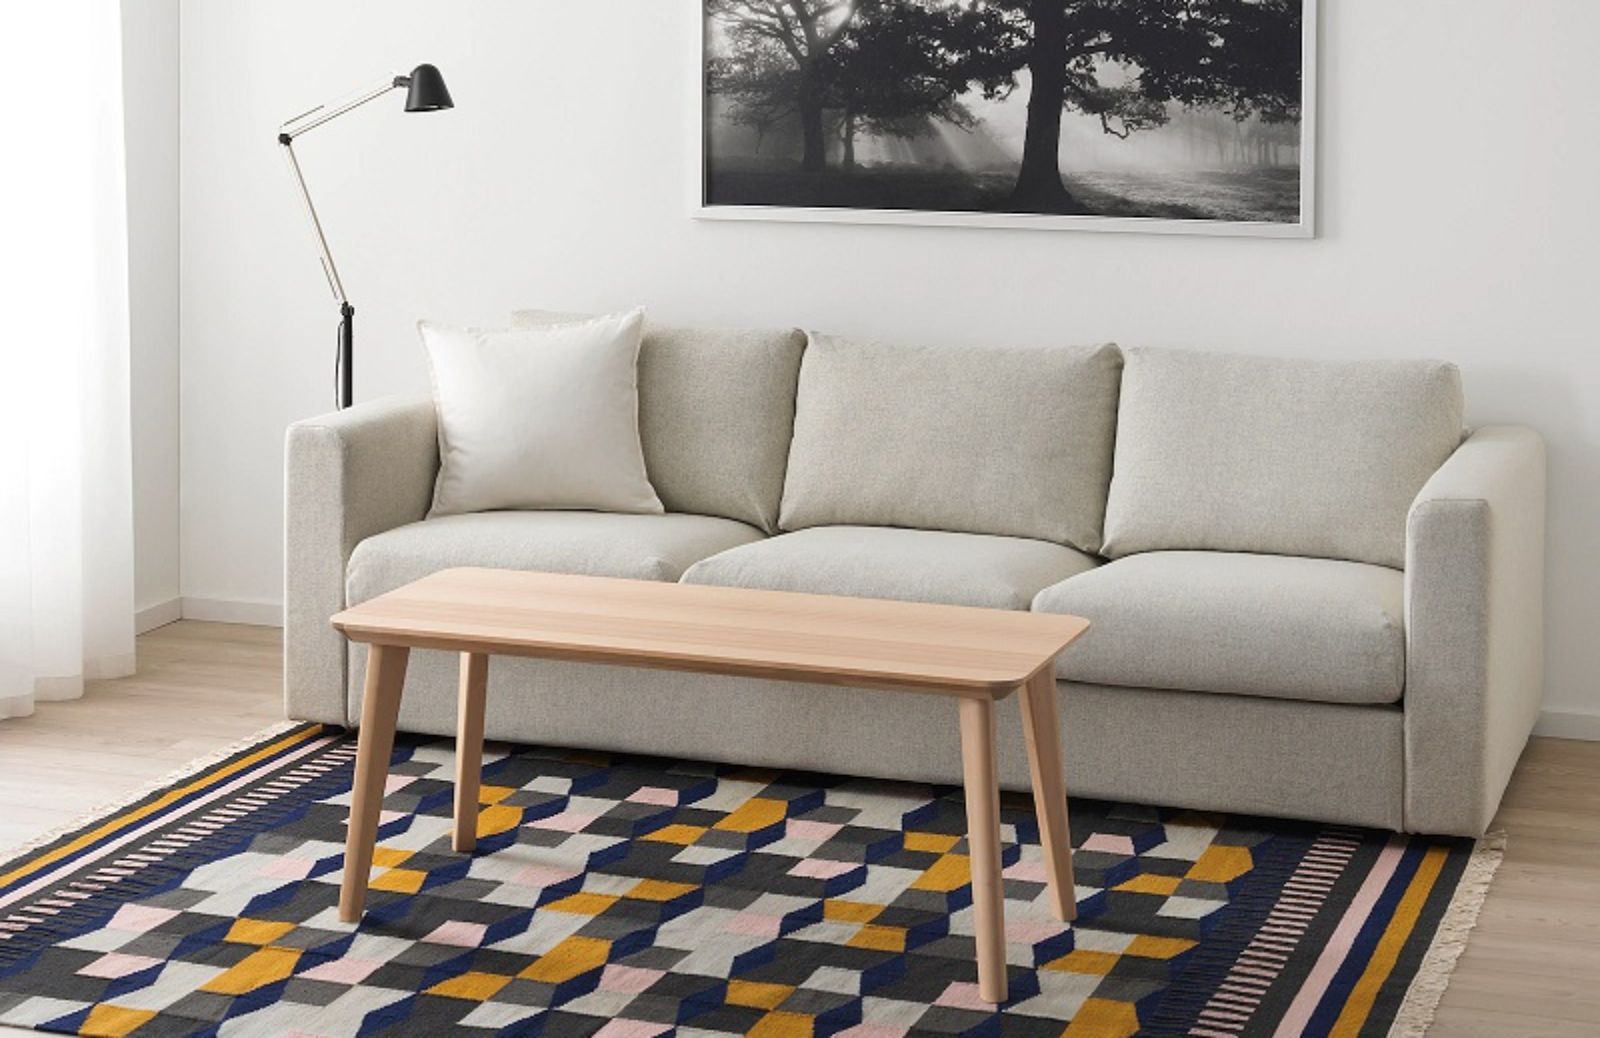 Tappeti per decorare il pavimento: 5 idee di Ikea